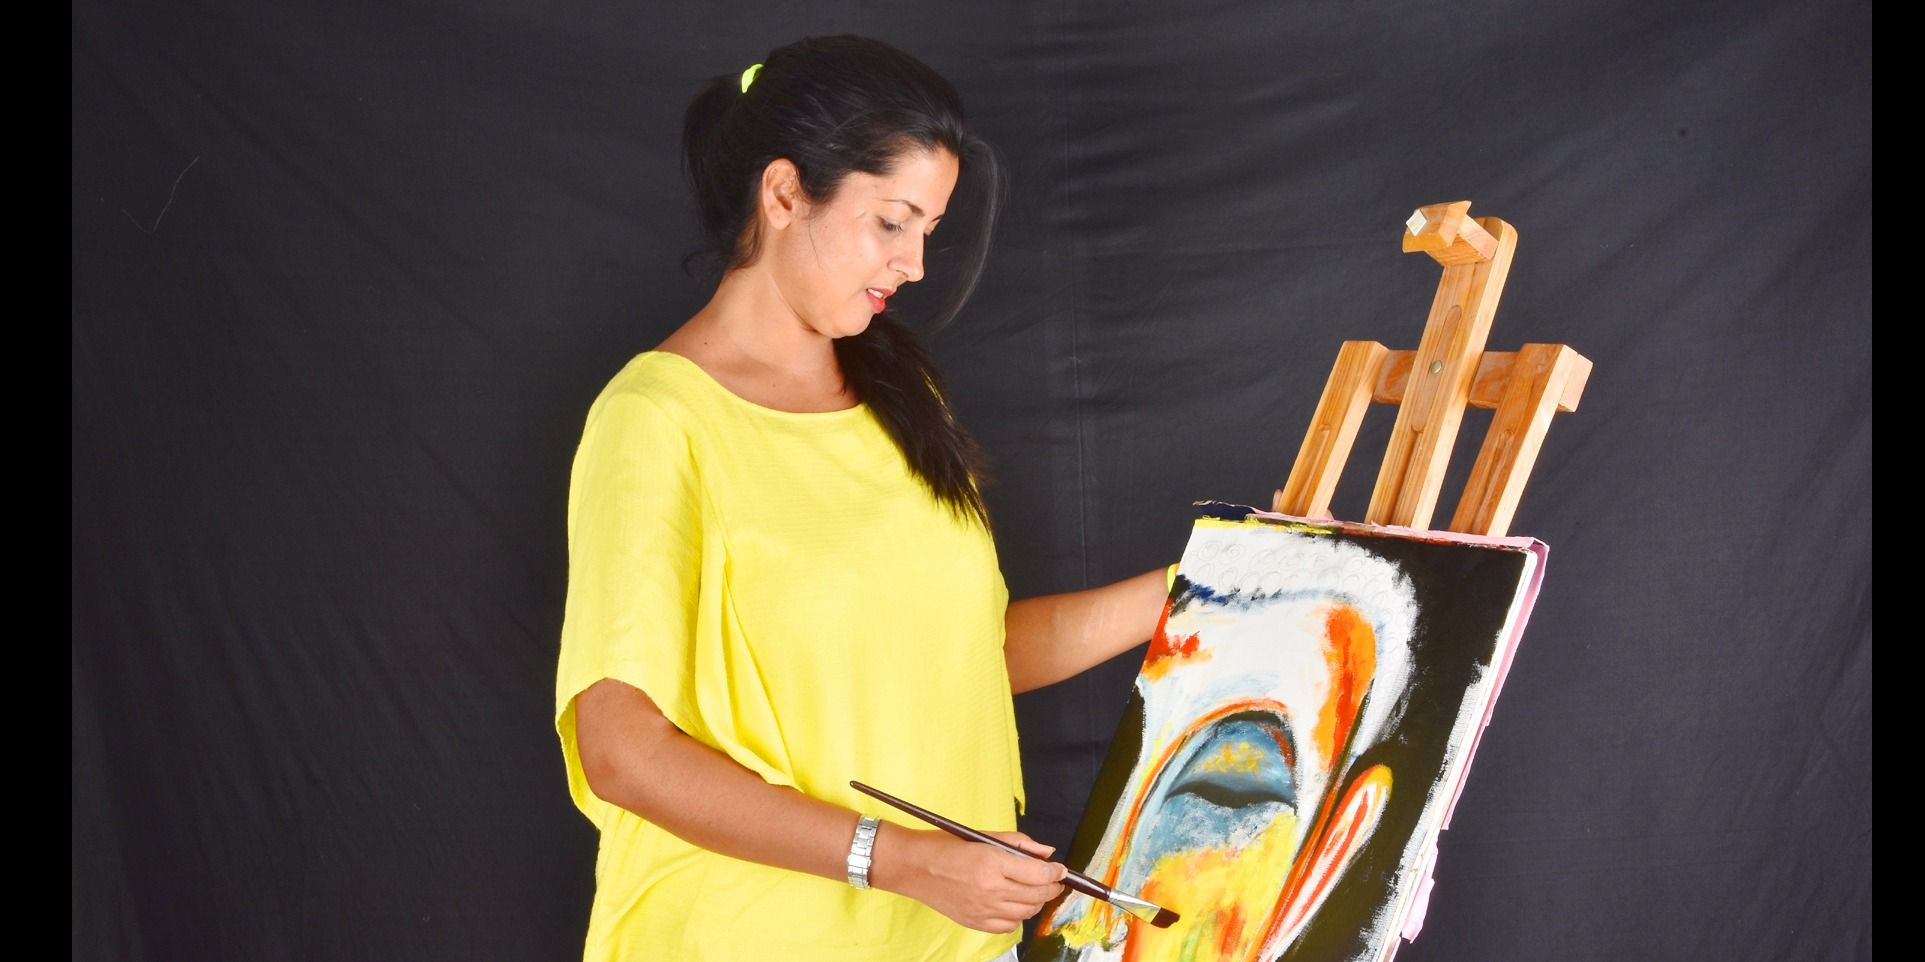 बी.टेक की डिग्री डाल दी डस्टबीन में, बच्चों को पेंटिंग सिखा कर कमा रही हैं लाखों रुपये महीना